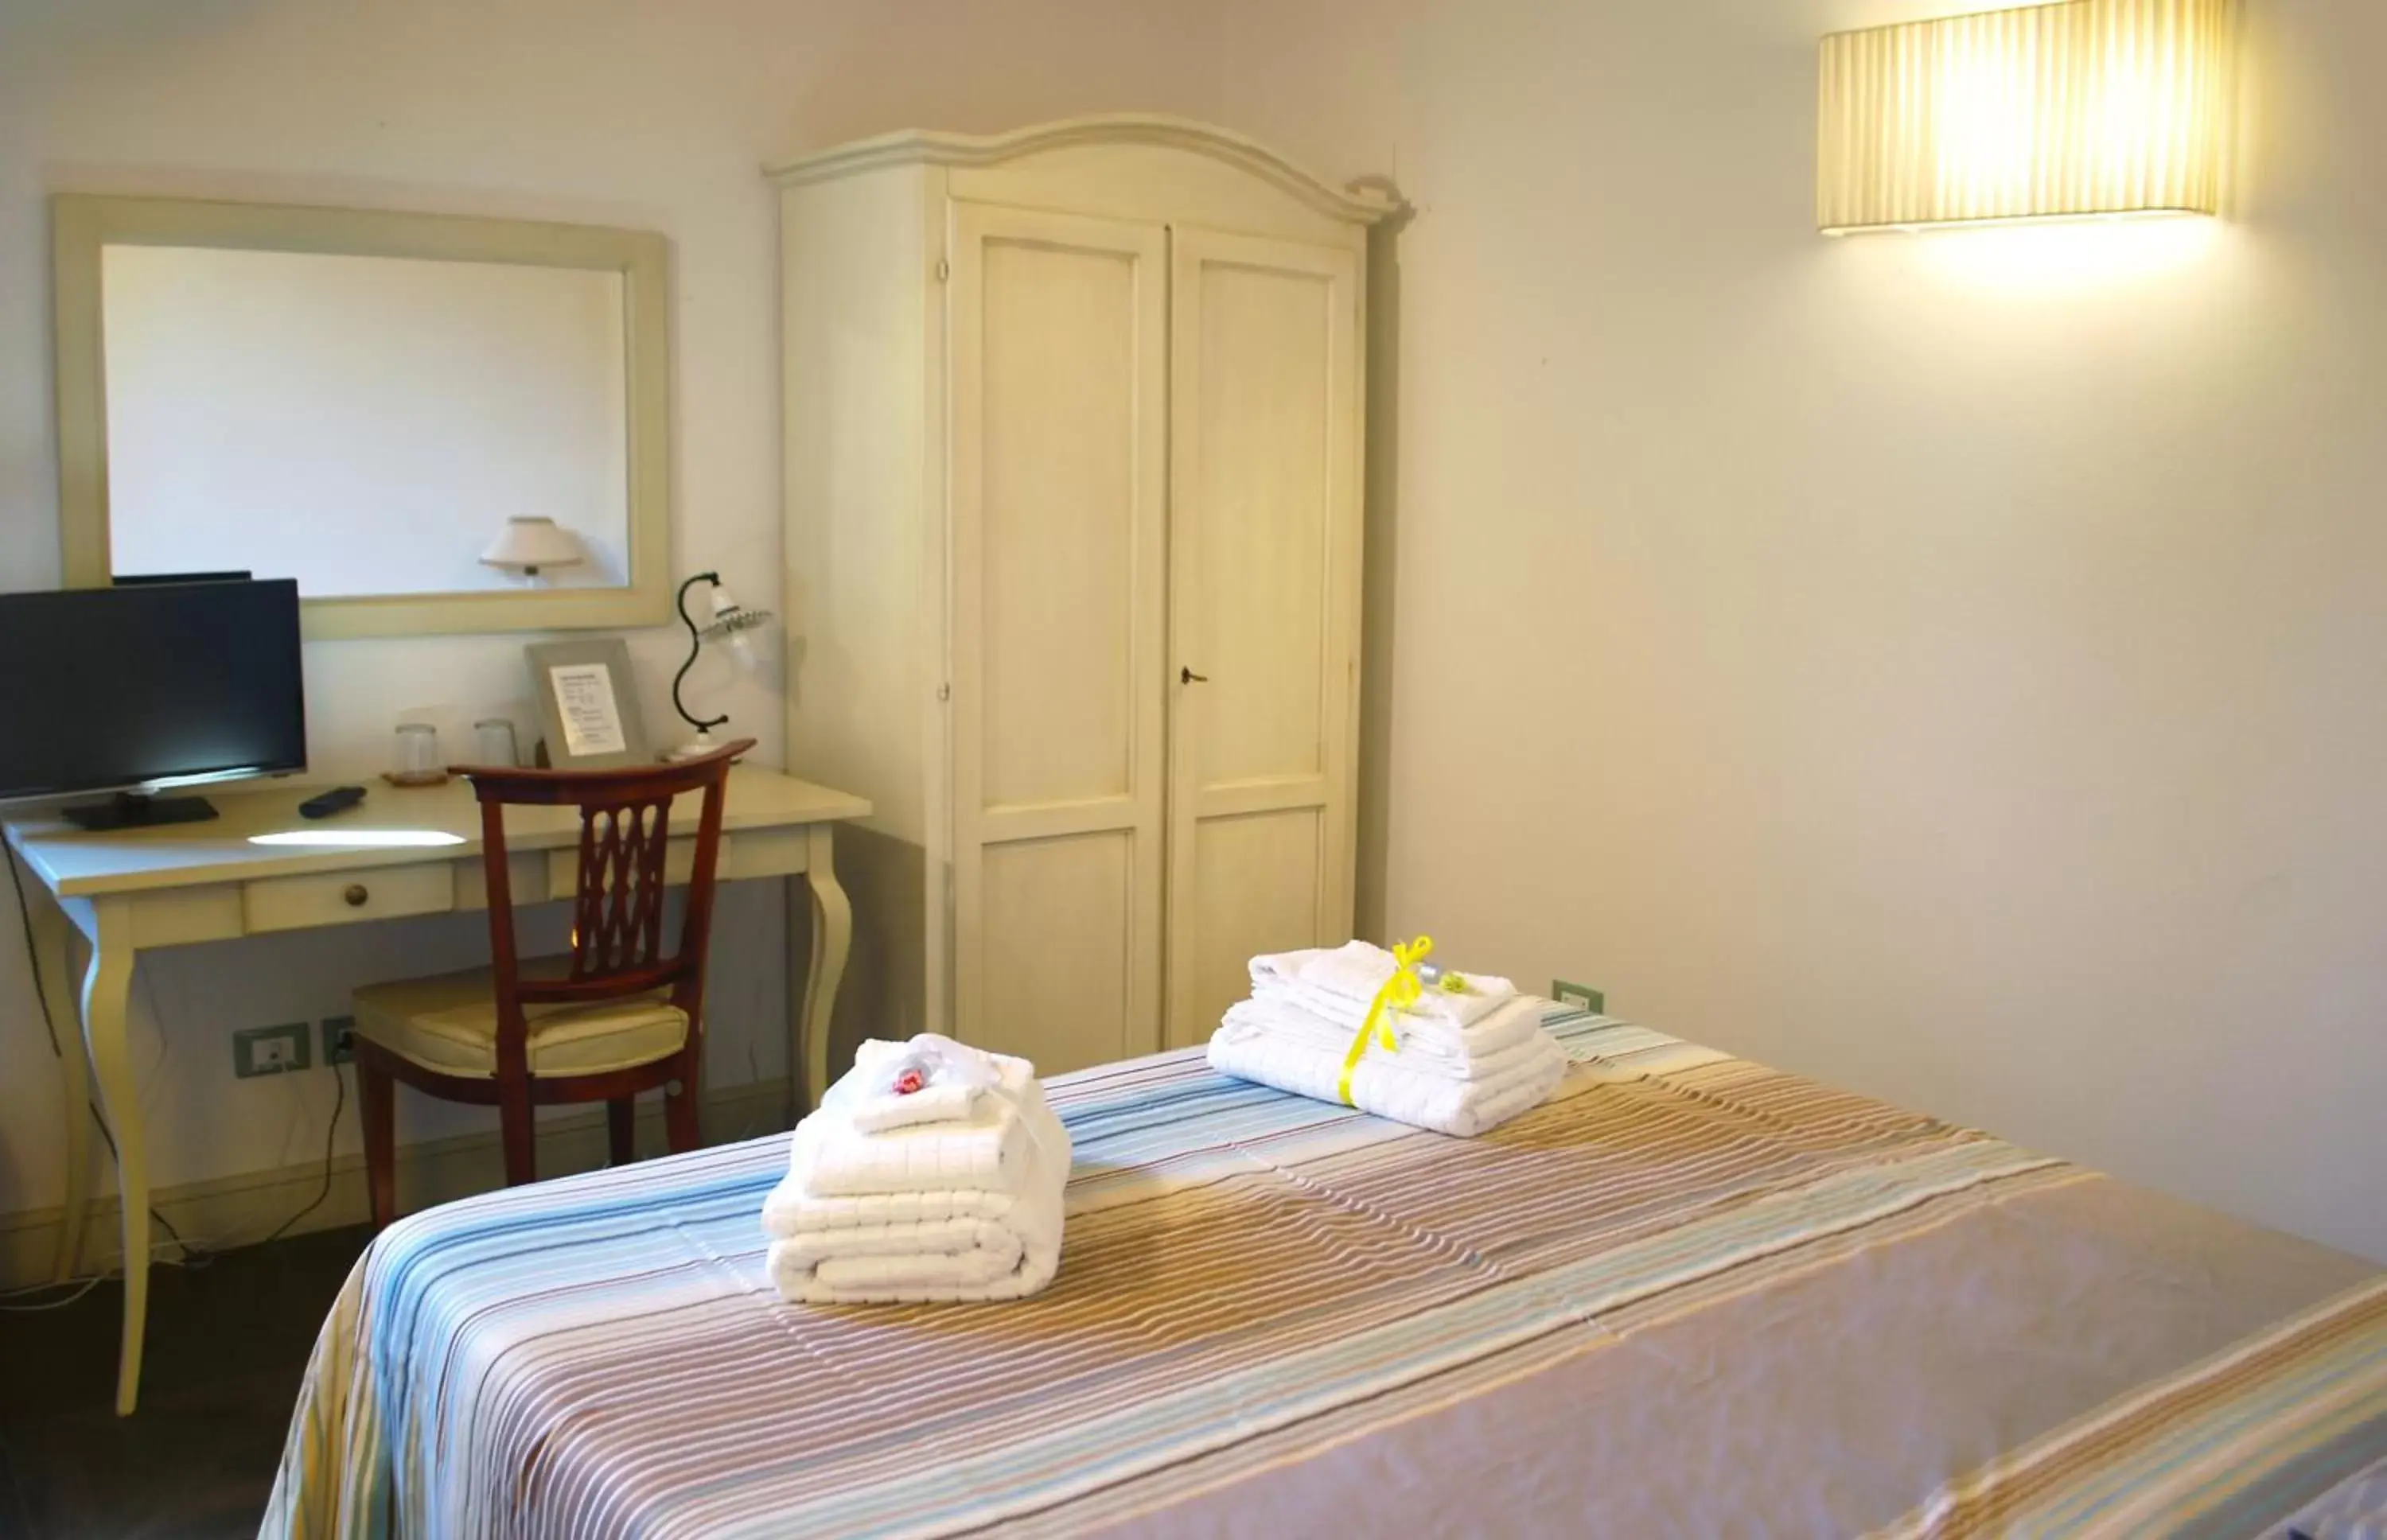 Bedroom, Room Photo in Armonie di Villa Incontri B&B